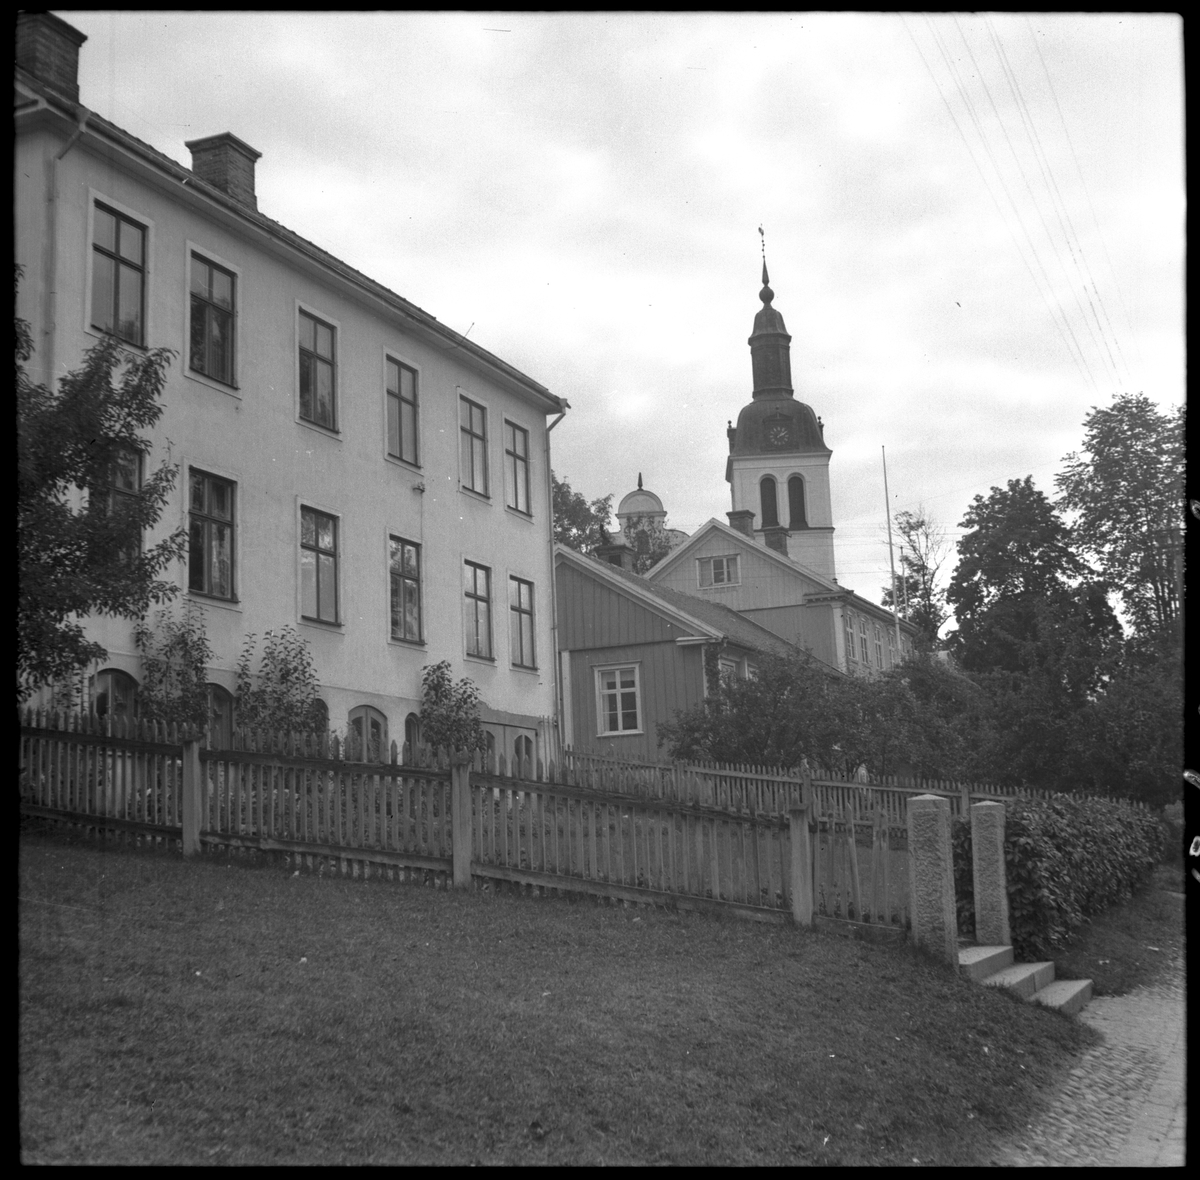 Närmast i bild kv Brahe 9 (Brahegatan 30), därnäst kv Brahe 2 (fd Gränna pedagogi, Brahegatan 28). I bakgrunden syns Gränna kyrka.